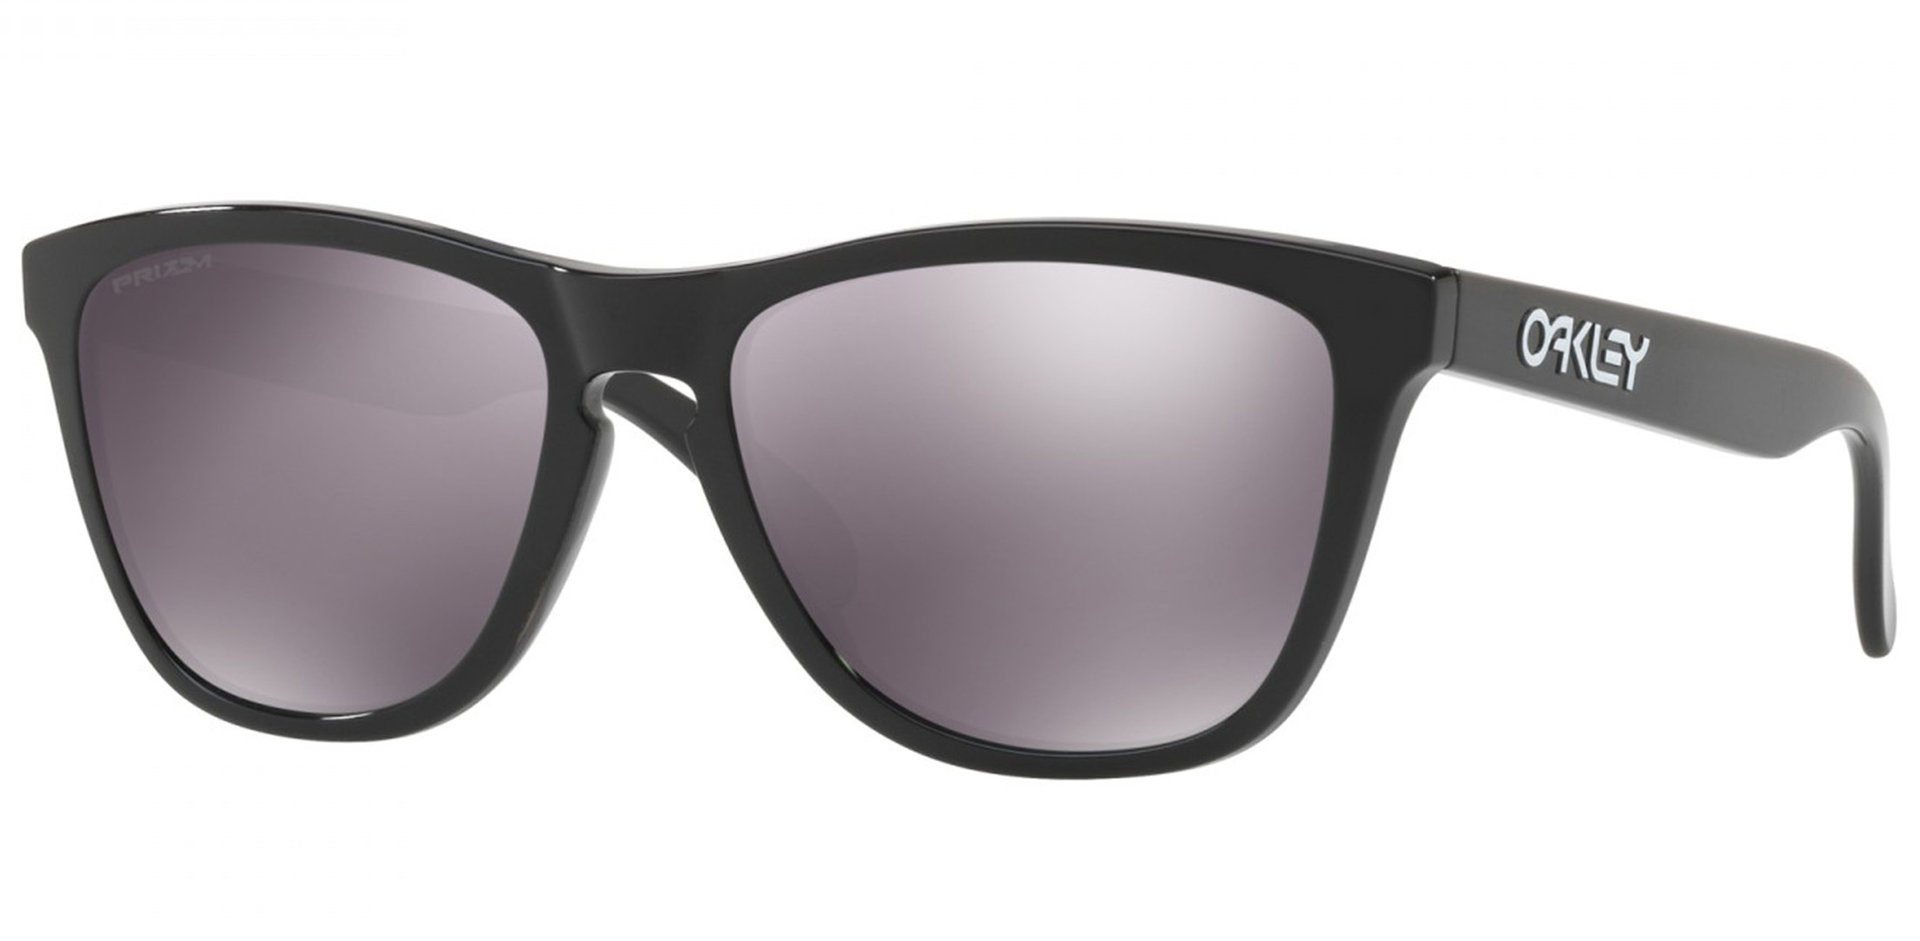 Oakley Frogskins Black Prizm Sonnenbrille, schwarz-grau